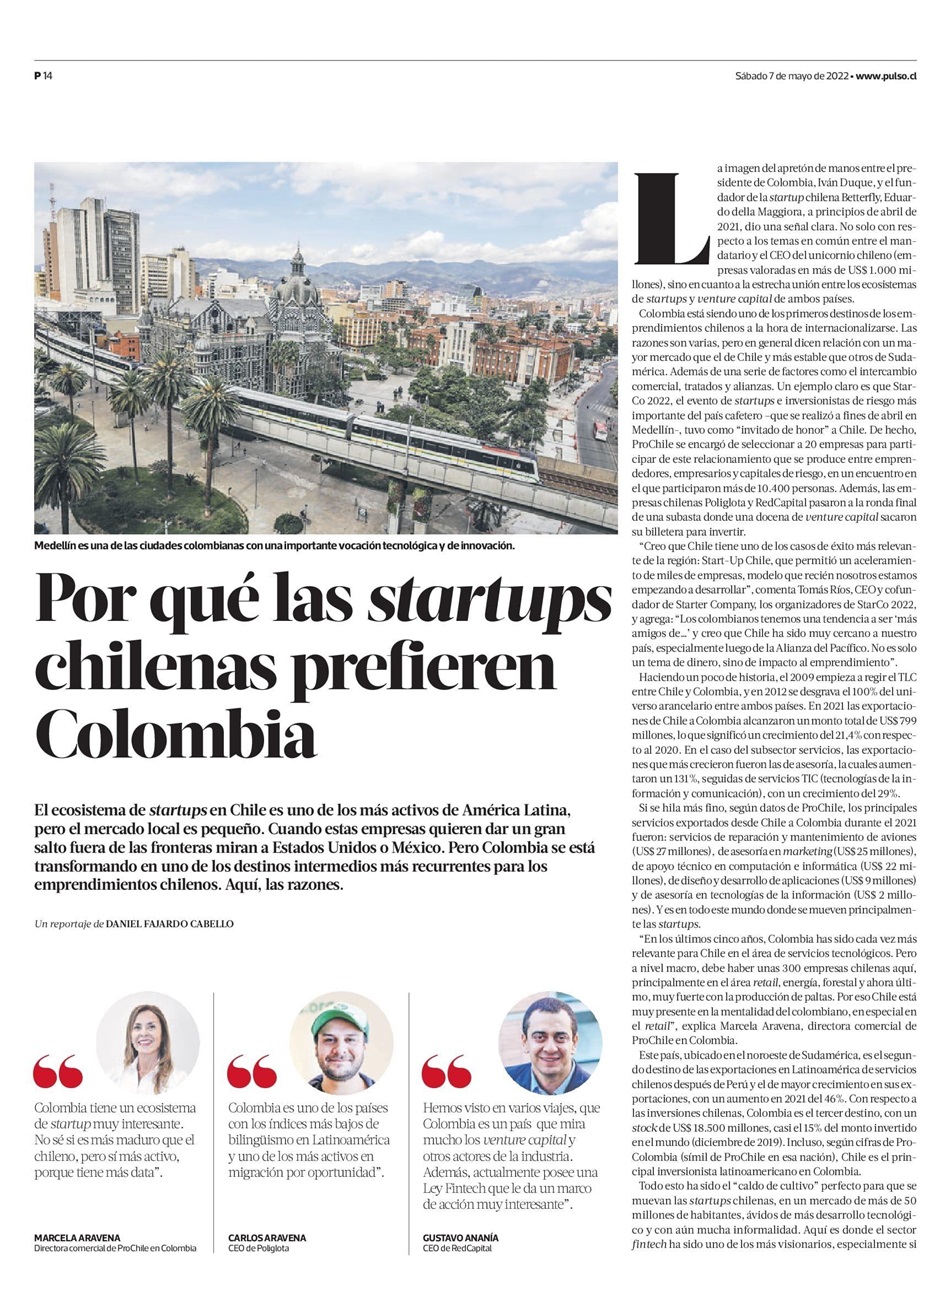 Destacado en prensa: "Por qué las startups chilenas prefieren Colombia"